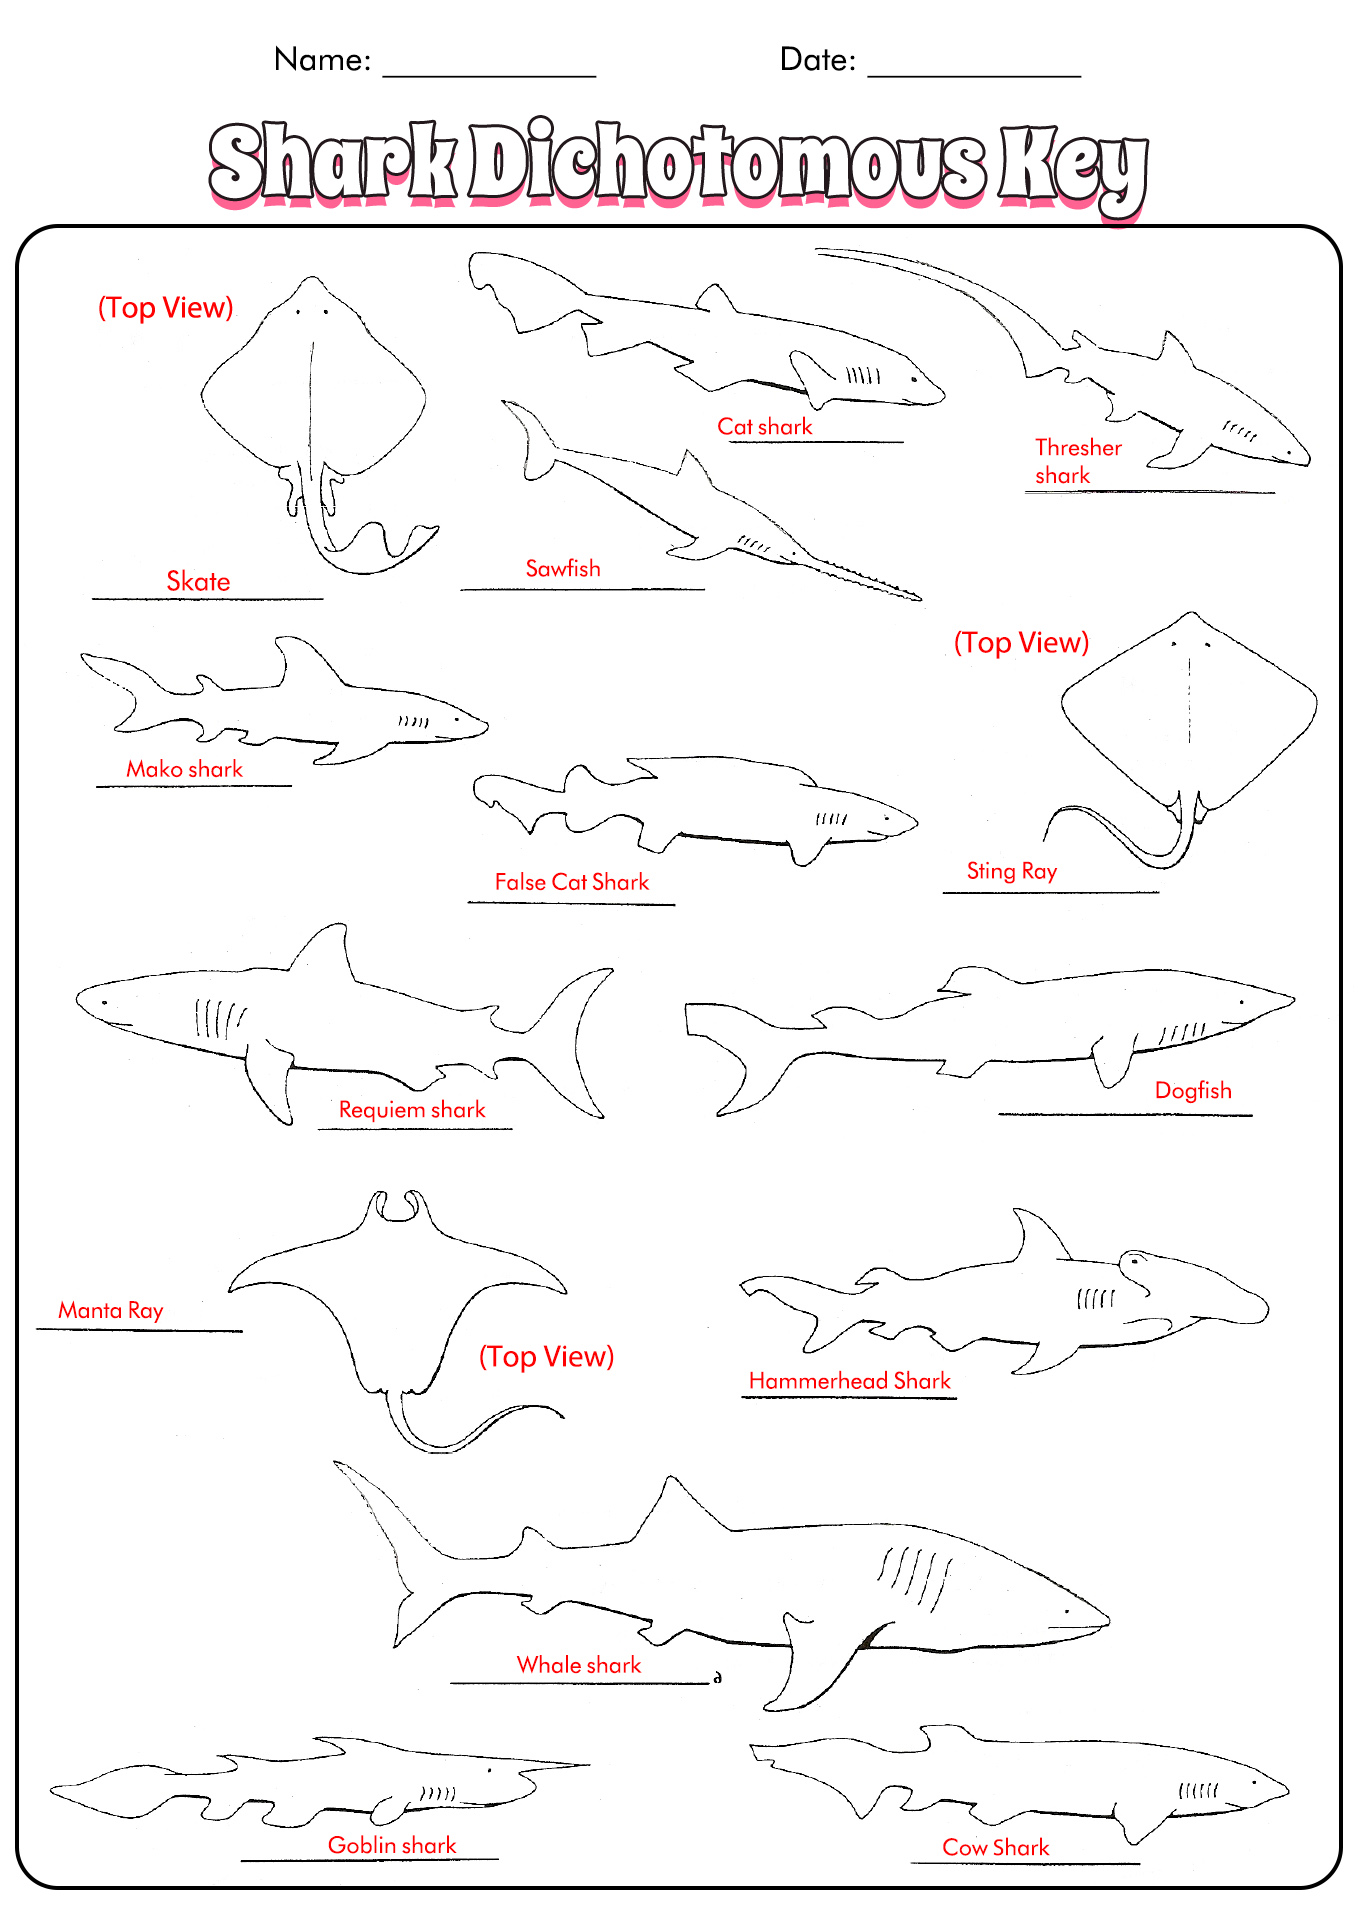 Shark Dichotomous Key Worksheet Answers Image